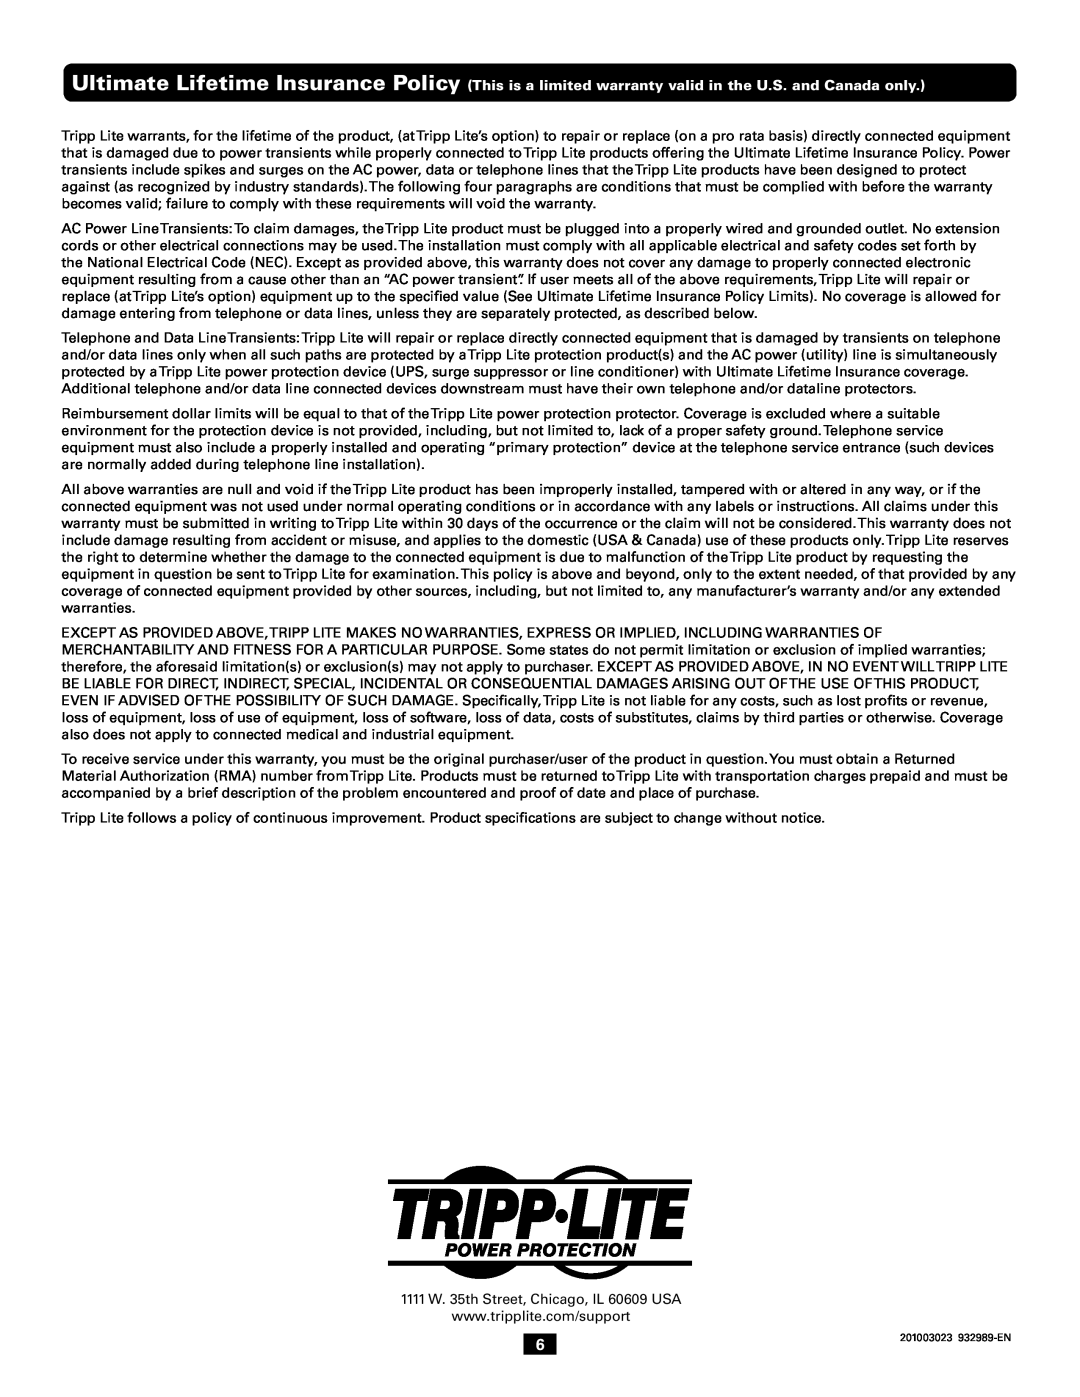 Tripp Lite AV10IRG owner manual 201003023 932989-EN 